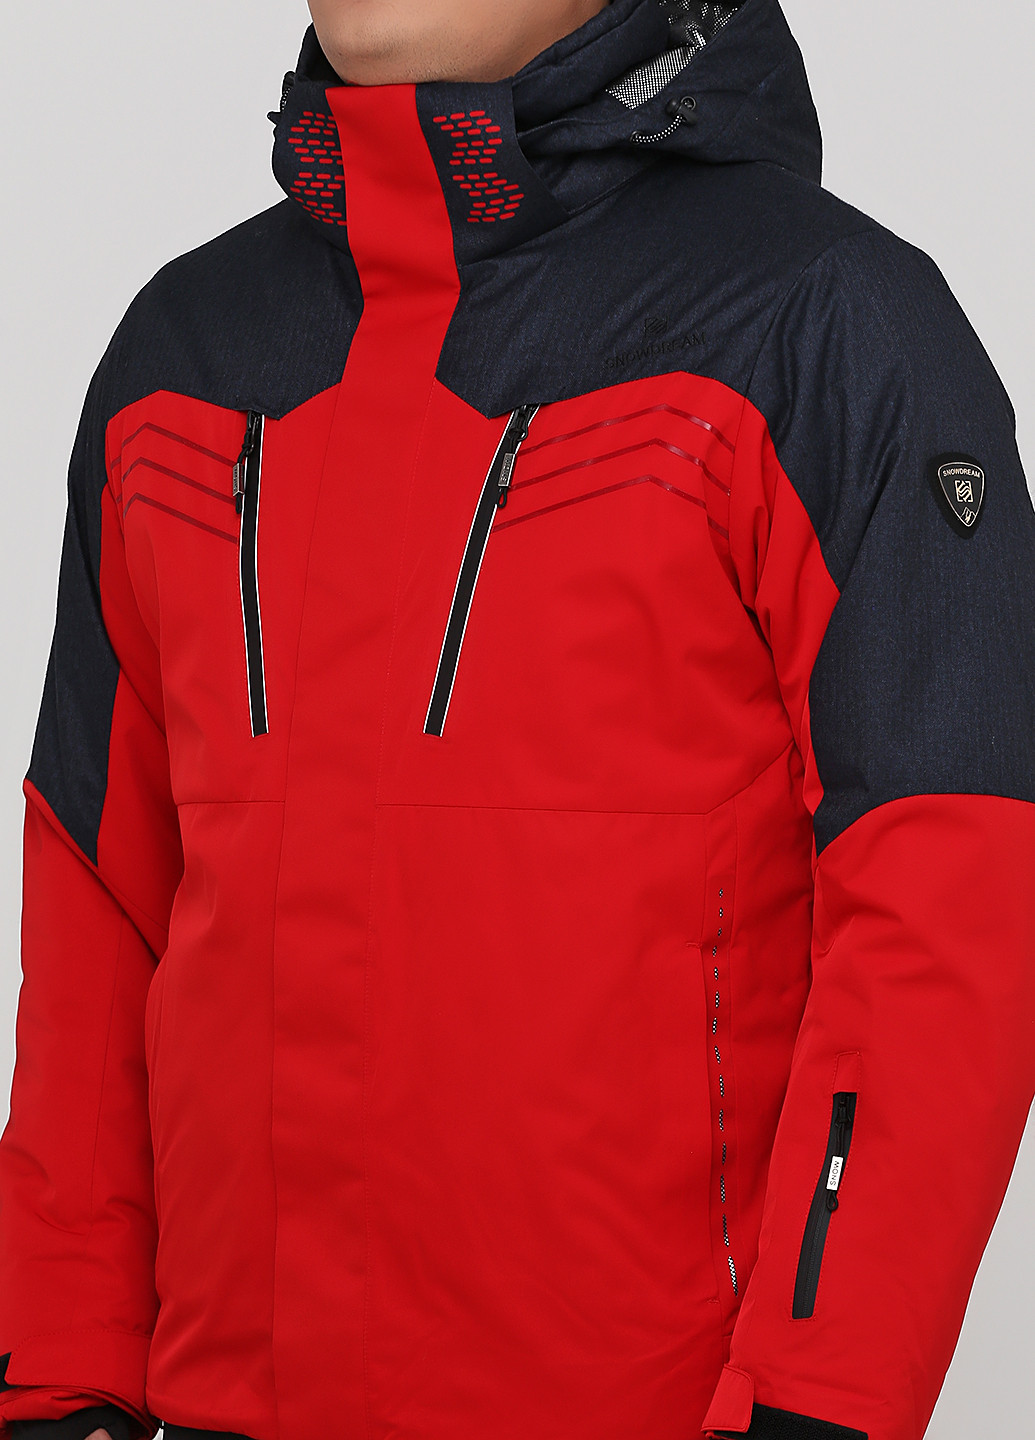 Красный зимний костюм лыжный (куртка, брюки) брючный Snowdream